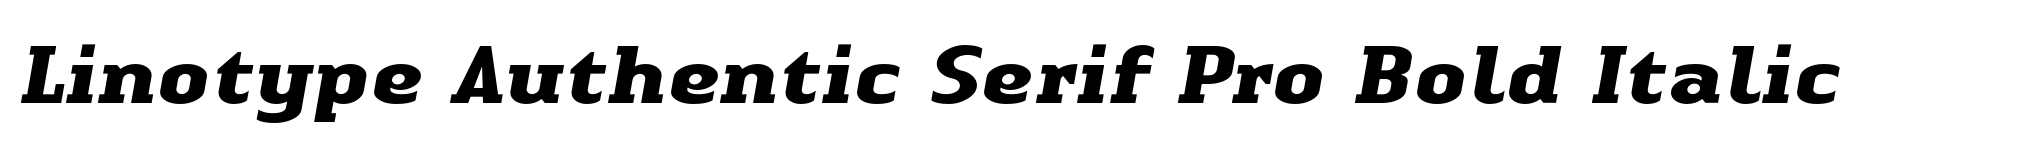 Linotype Authentic Serif Pro Bold Italic image